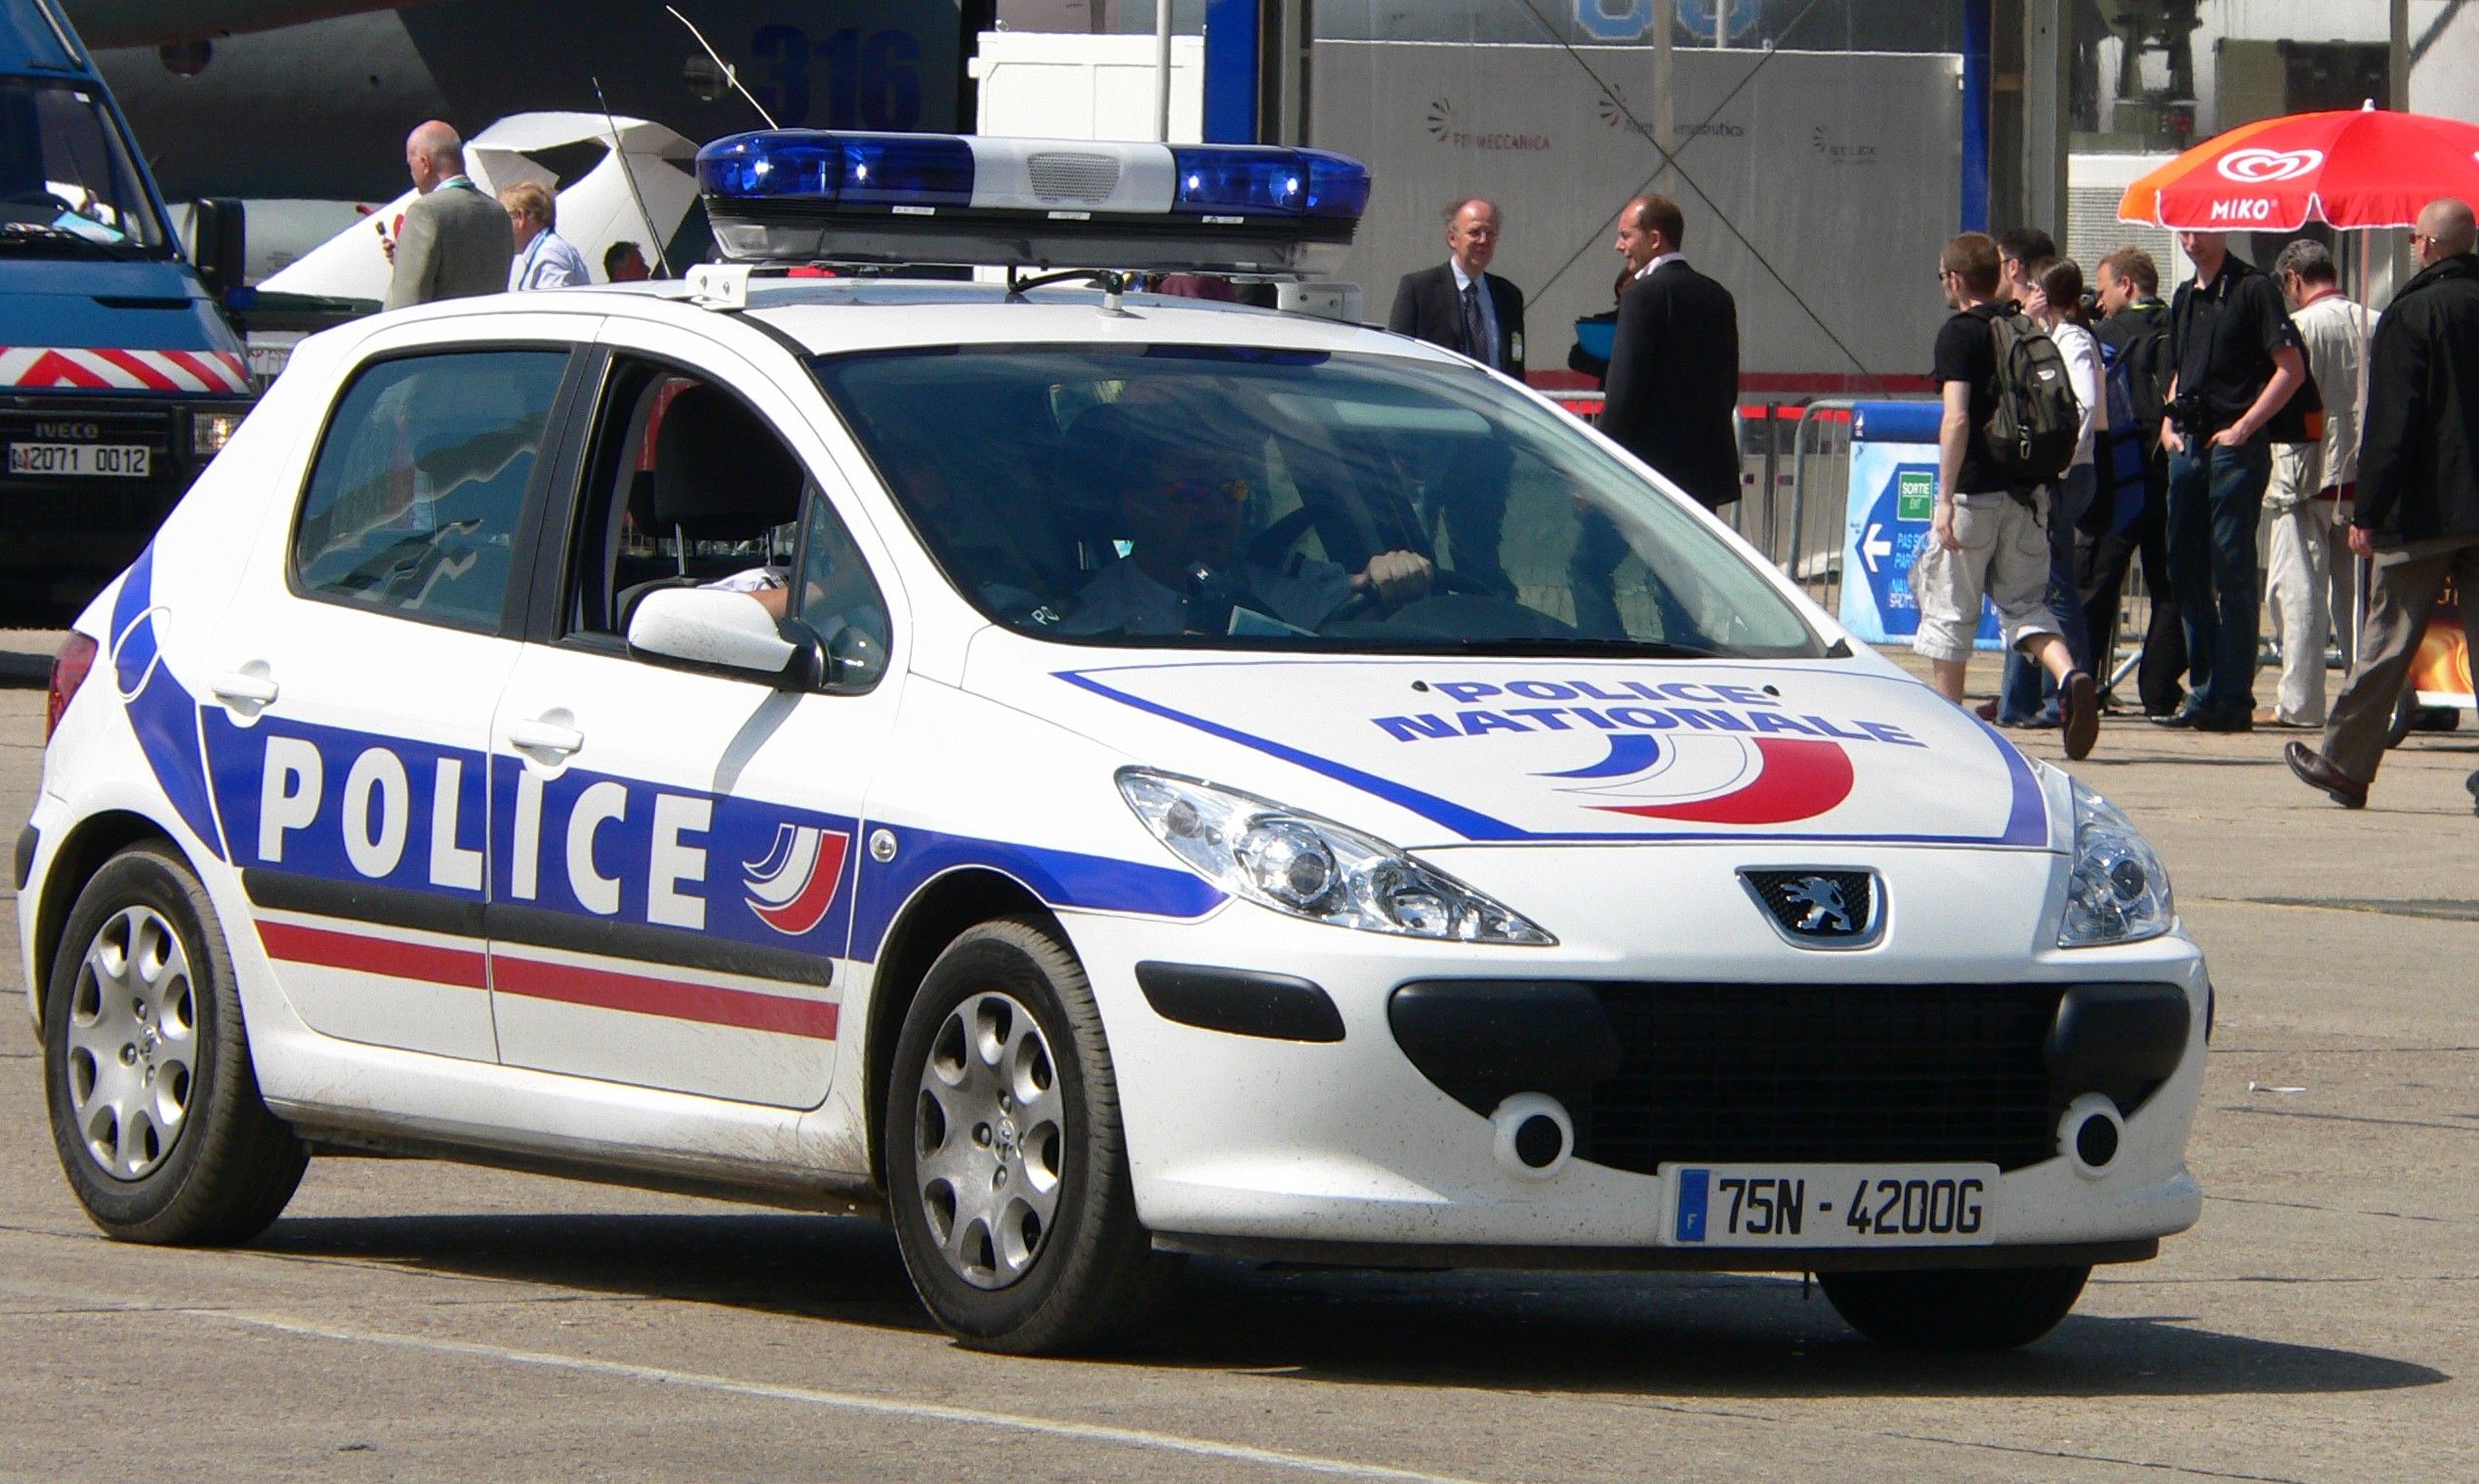 Policia França / David Monniaux